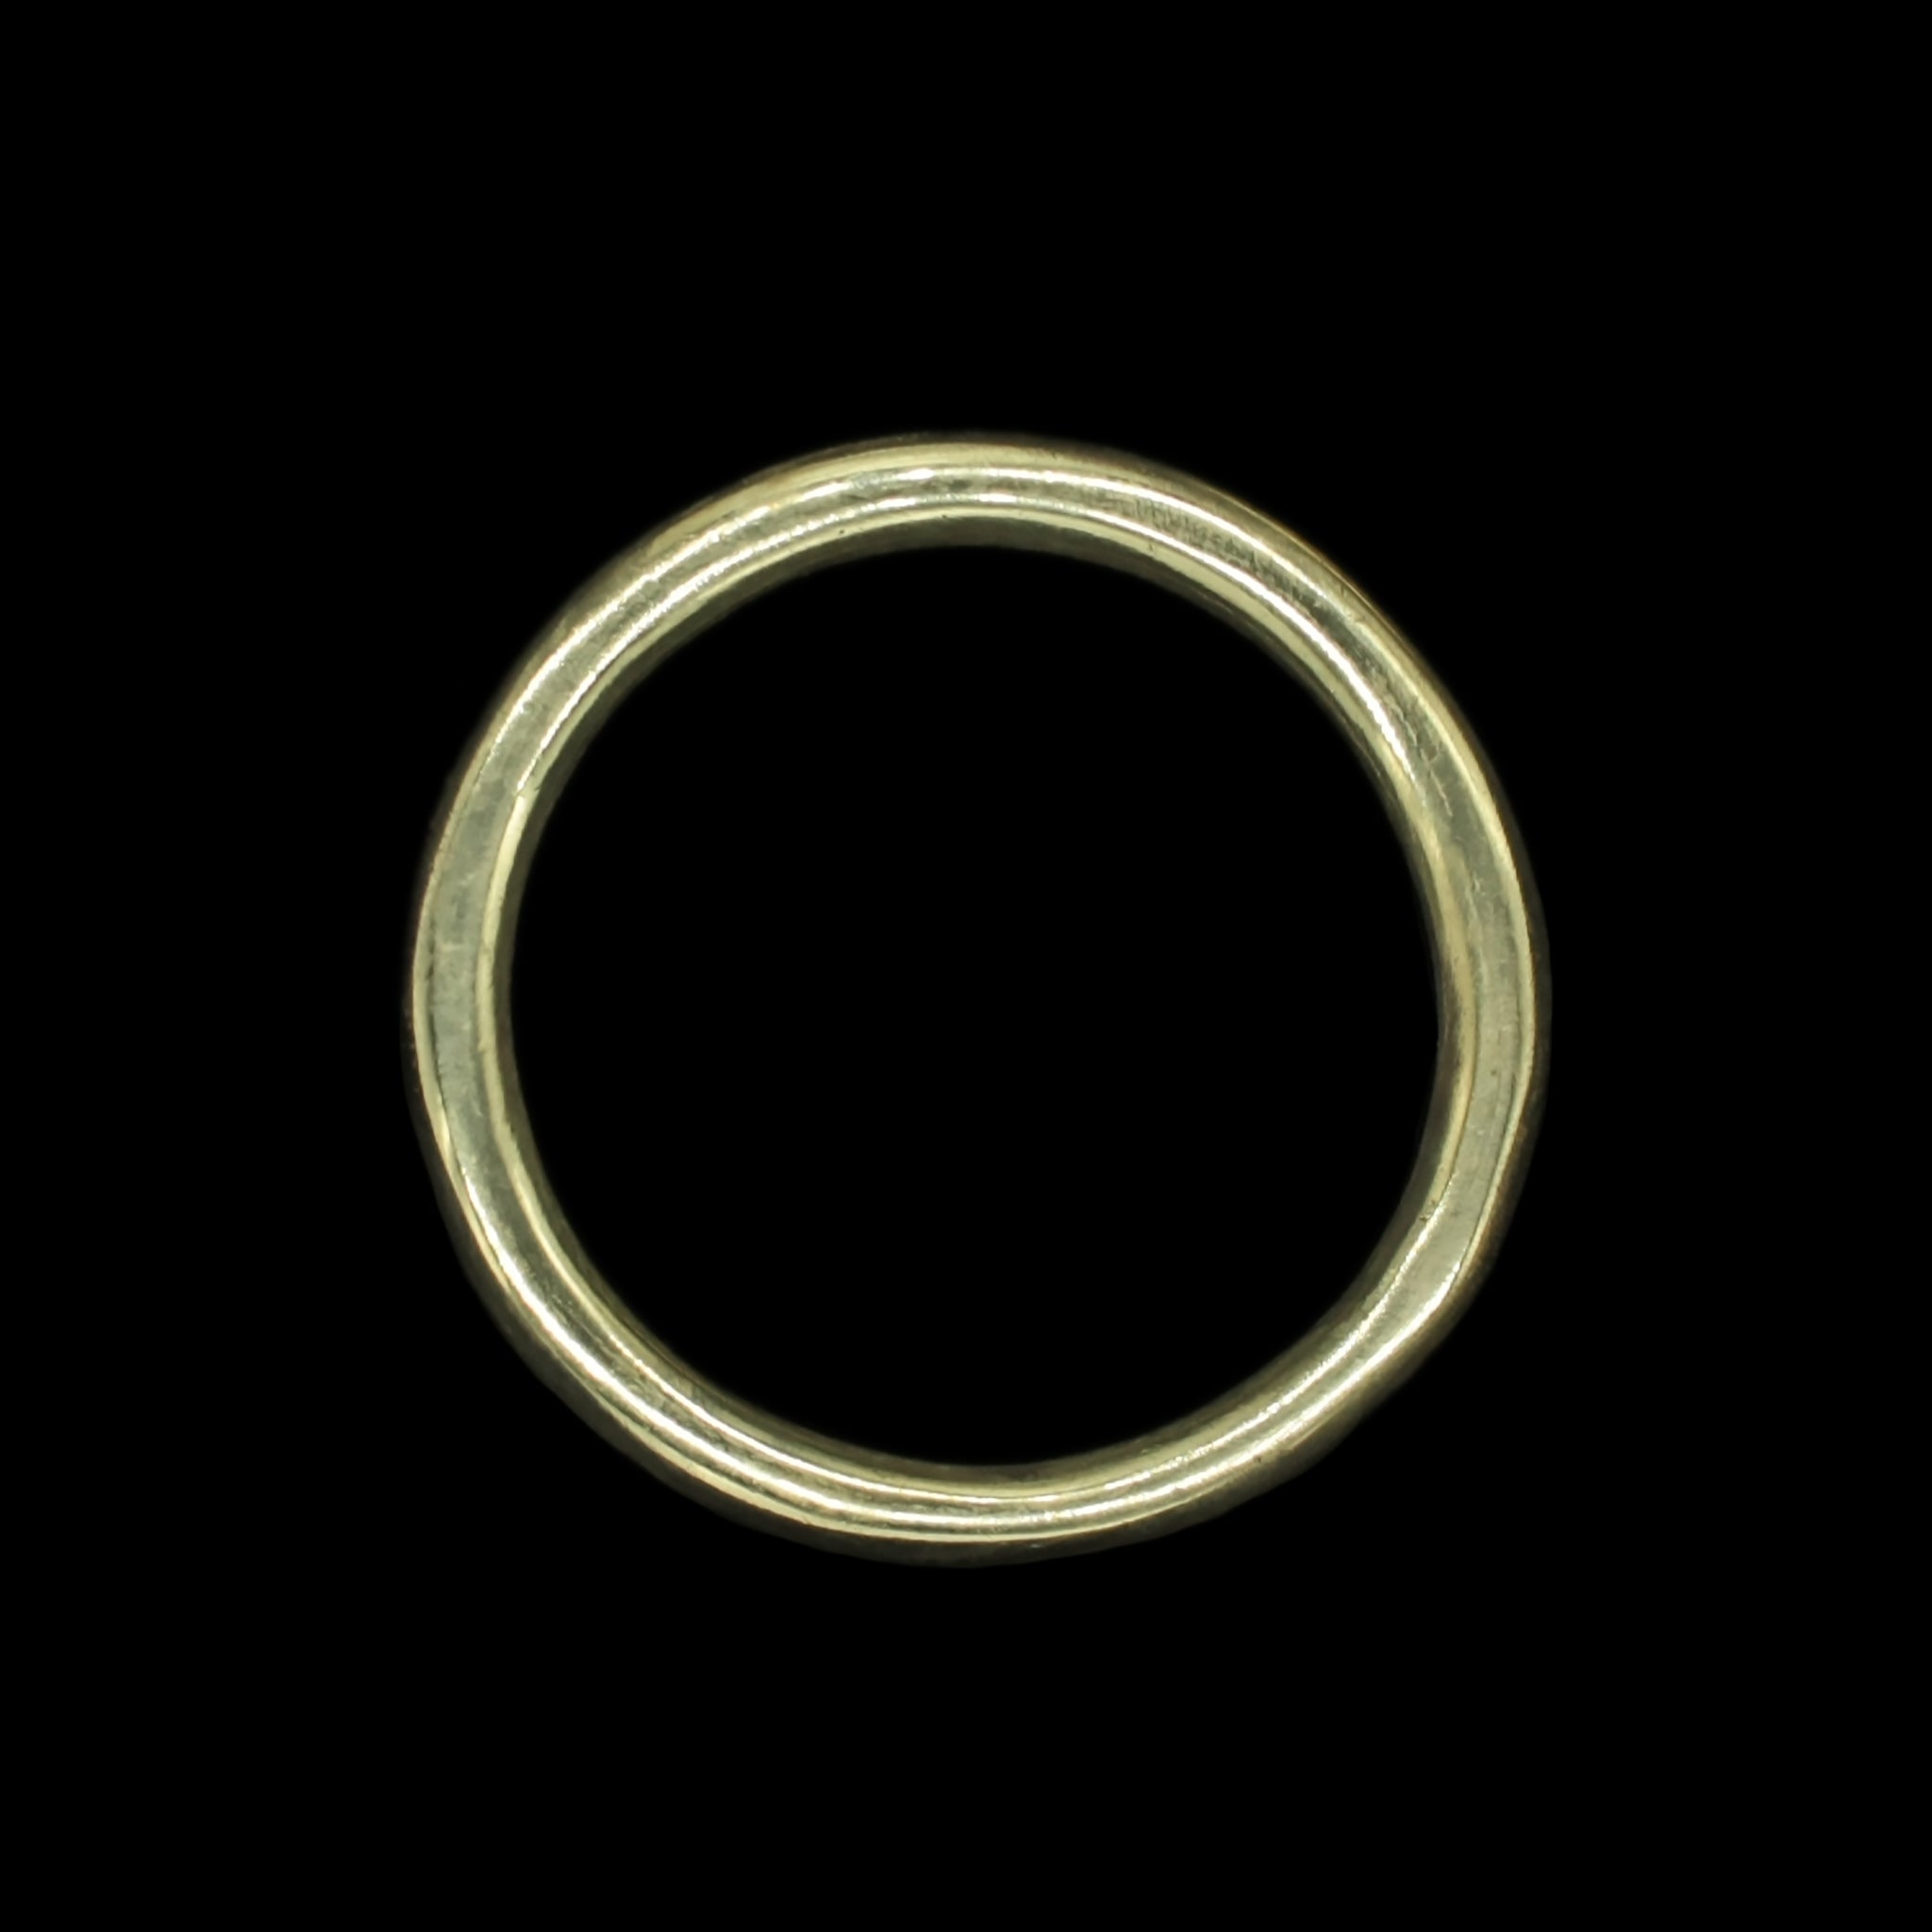 NBR O-ring 50 x 3mm (OD 56mm) 70 Shore A [50 Pieces] | Tameson.com